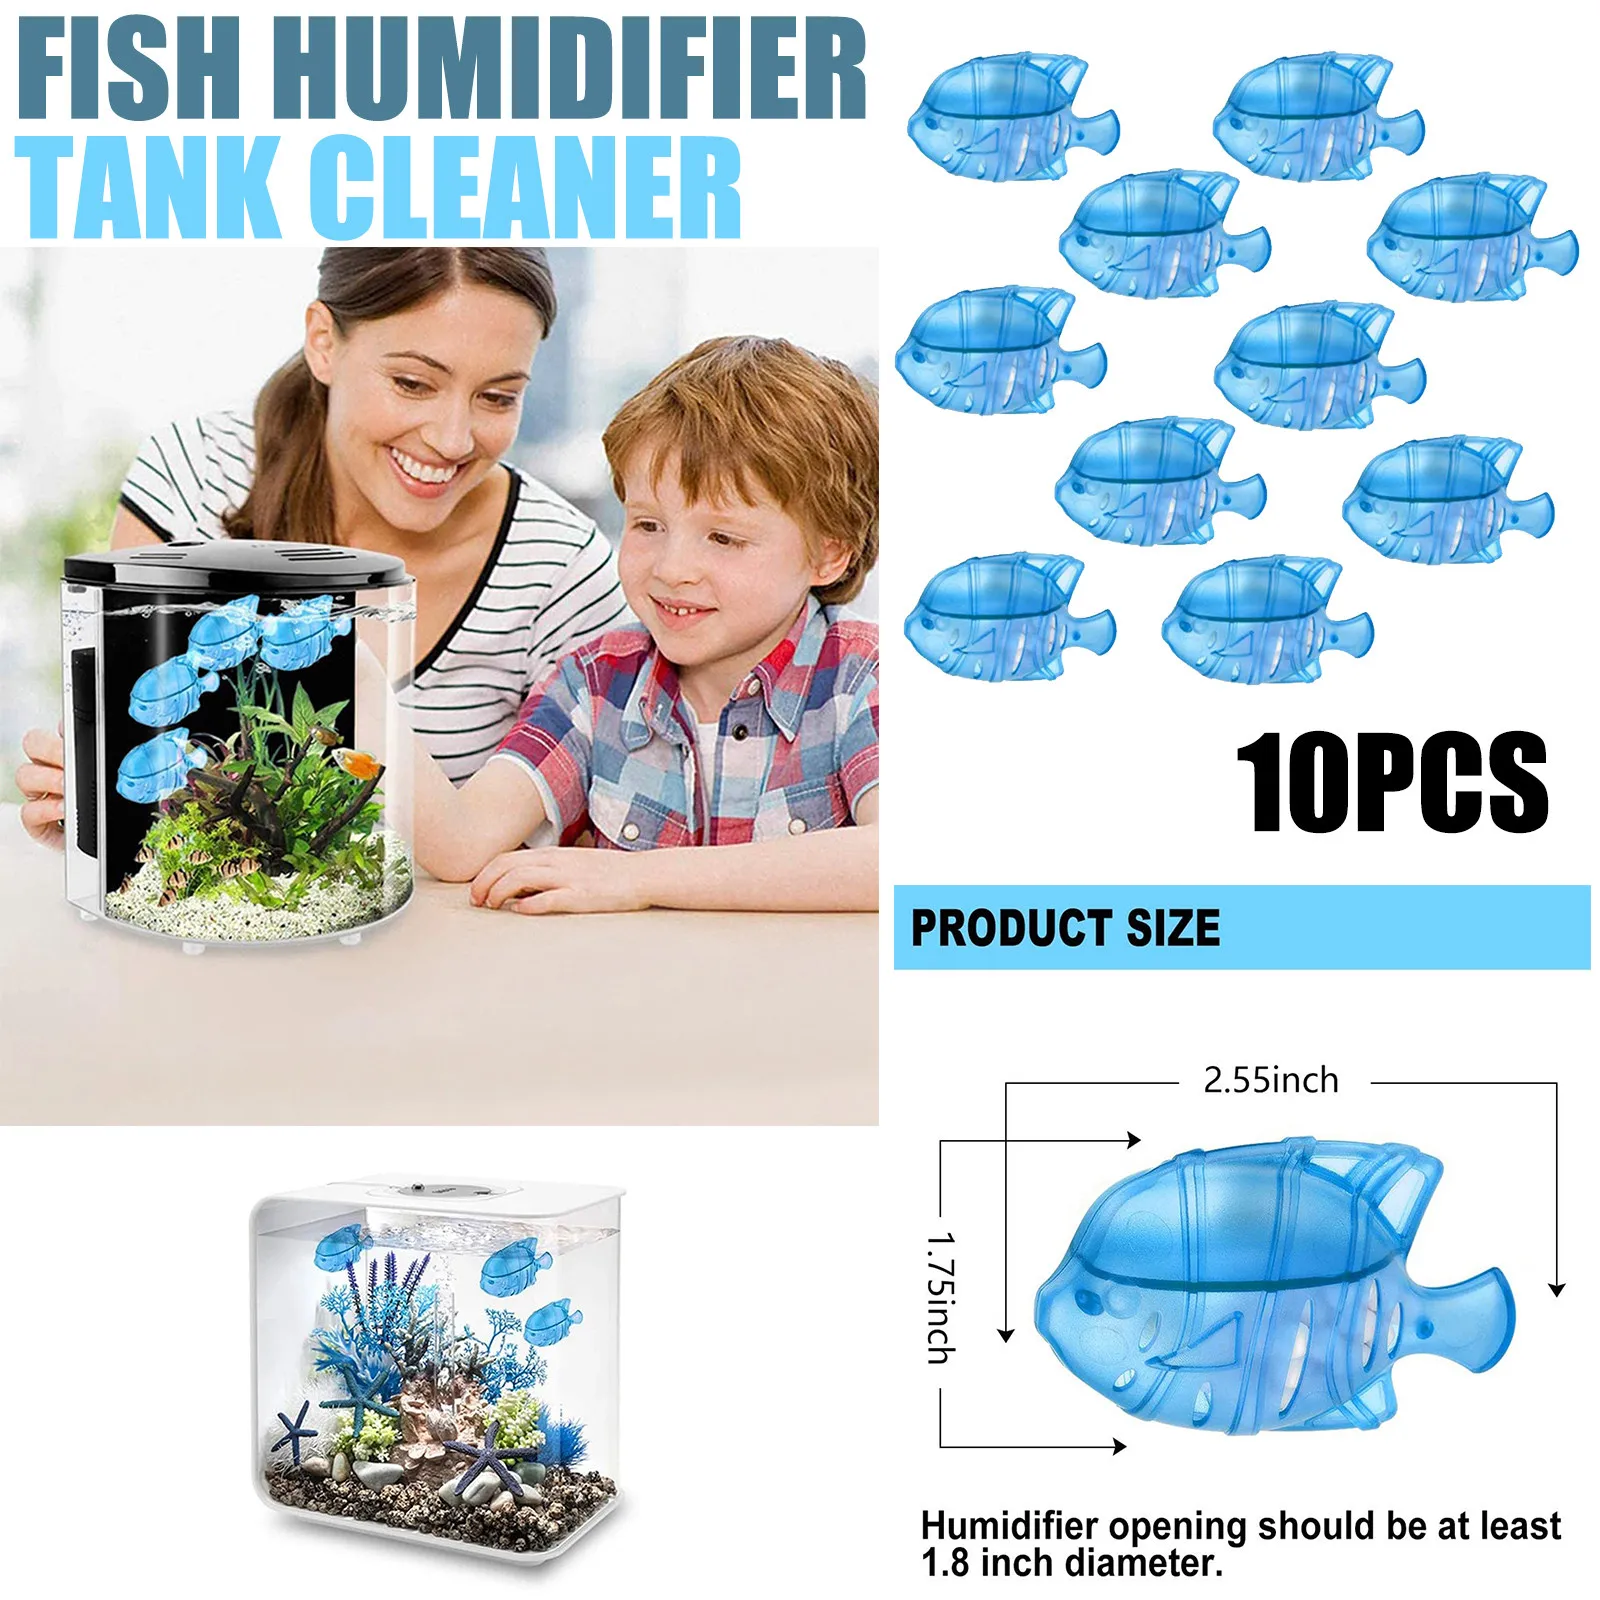 

10pcs Universal Humidifier Fish Tank Cleaner Fish Tank Cleaning Filter Warm Cool Mist Humidifiers Fish Tank akwarium akwarystyka